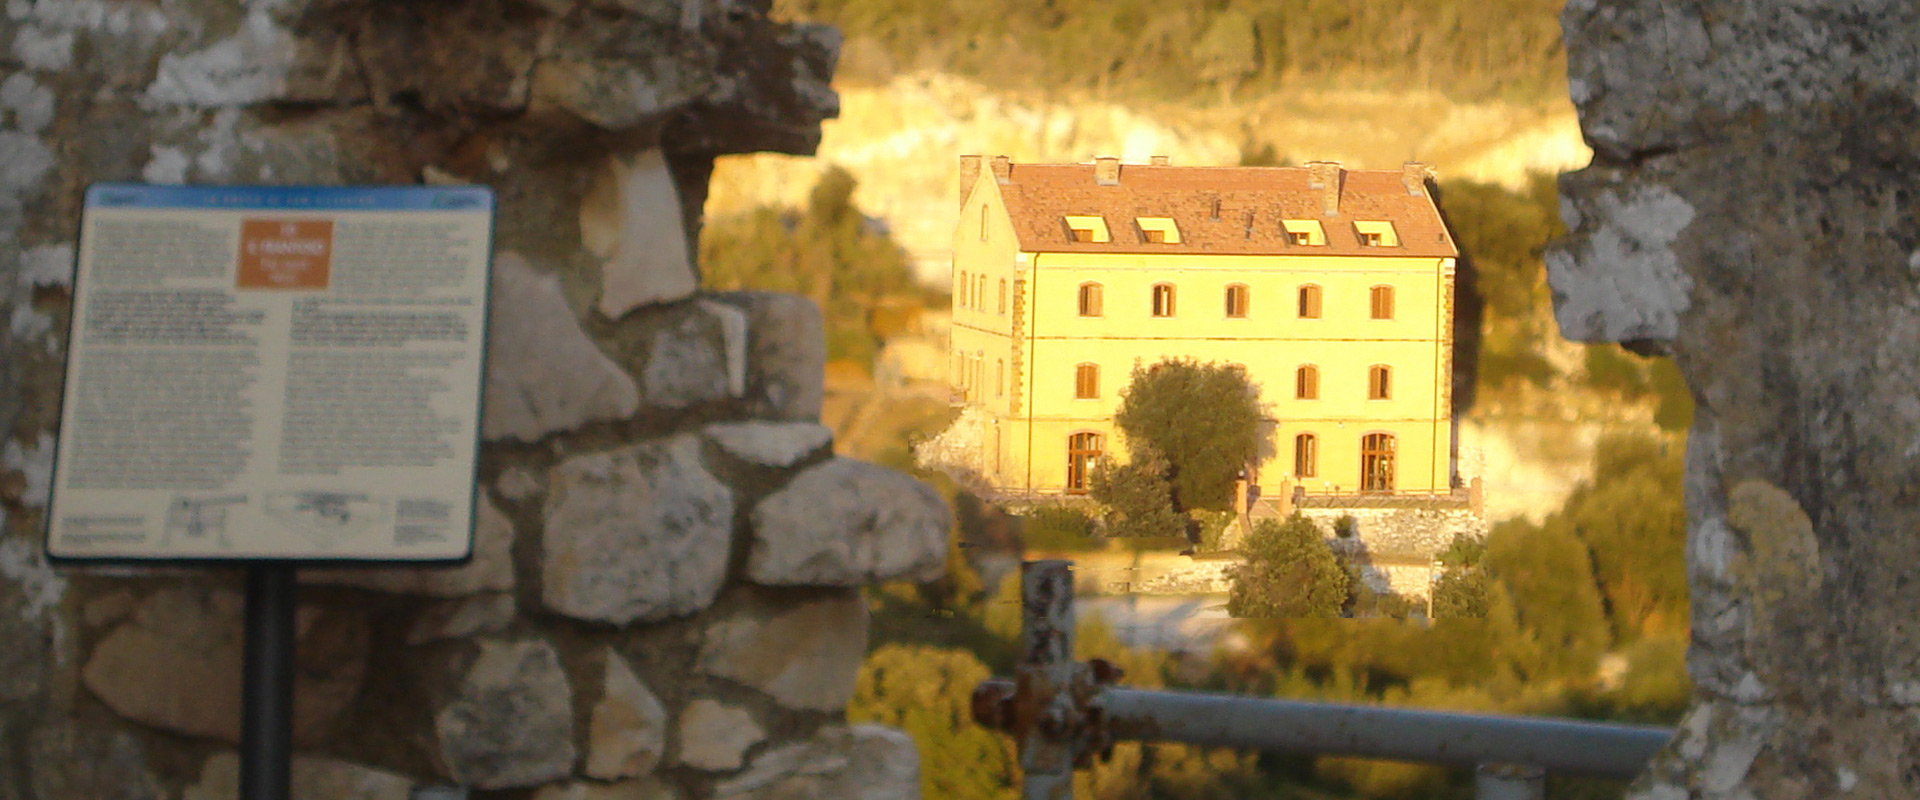 https://www.hostel.tuscany.it/uploads/images/slider/gowett.jpg